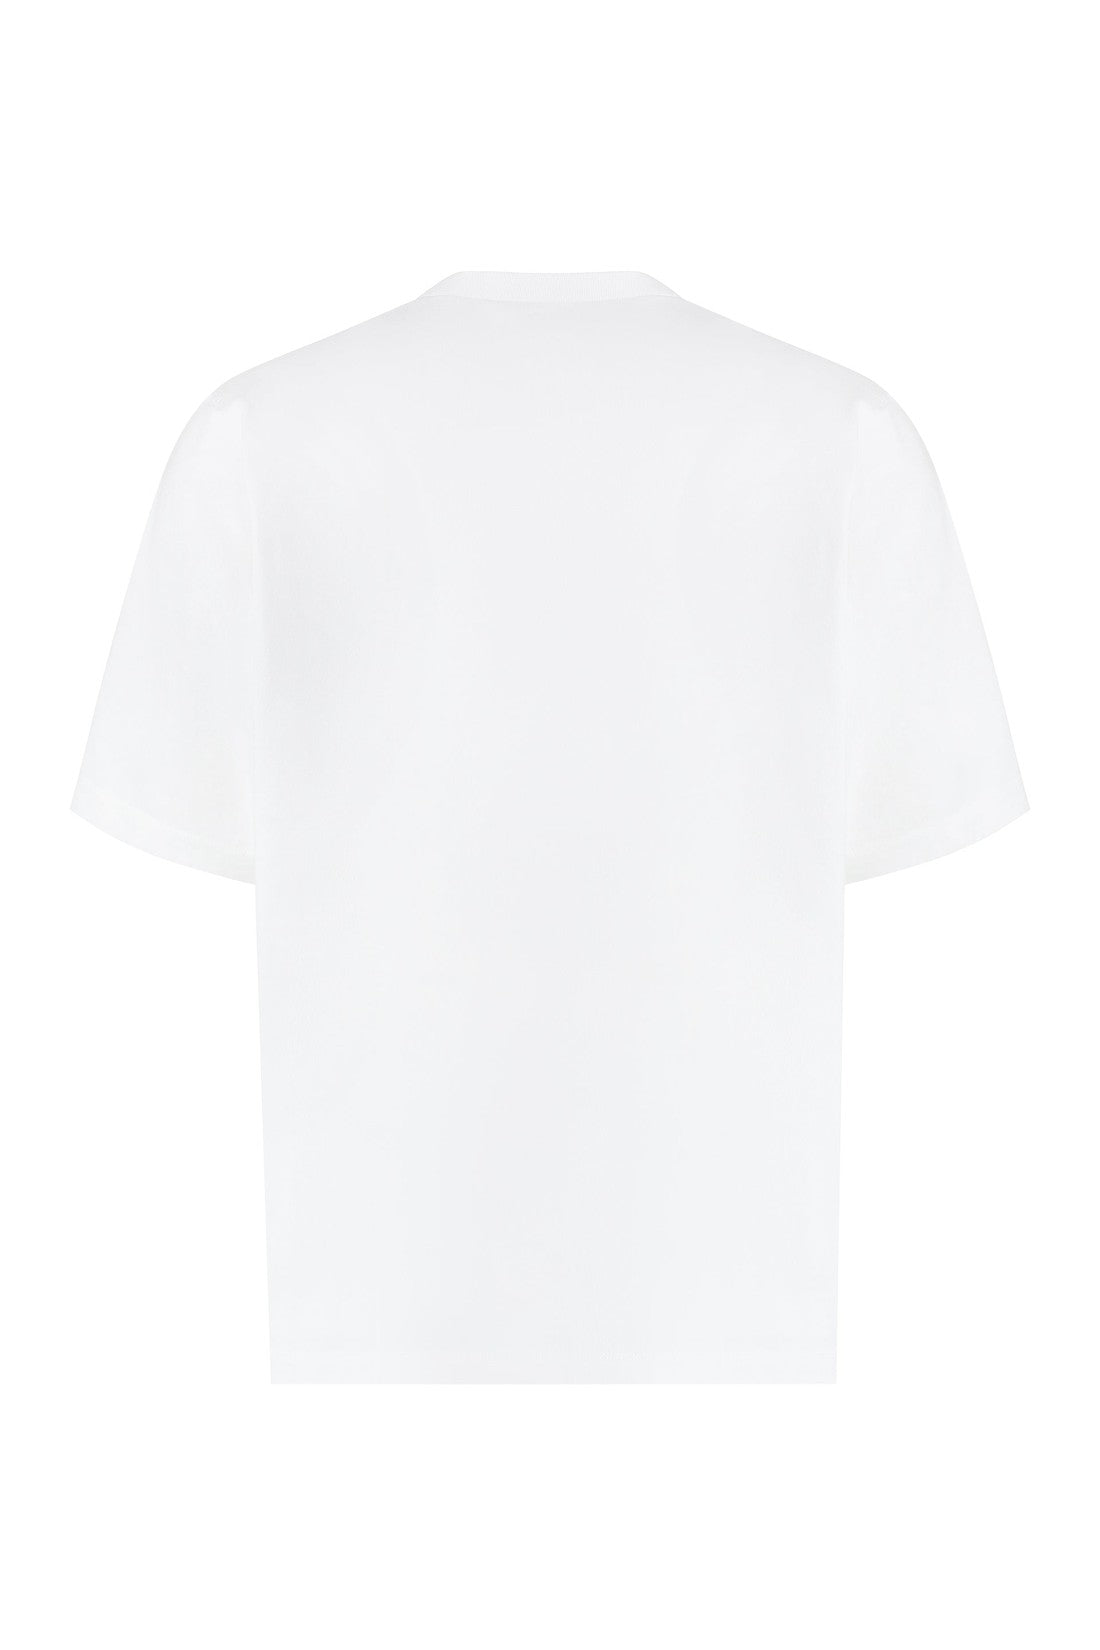 Dsquared2-OUTLET-SALE-Logo cotton t-shirt-ARCHIVIST